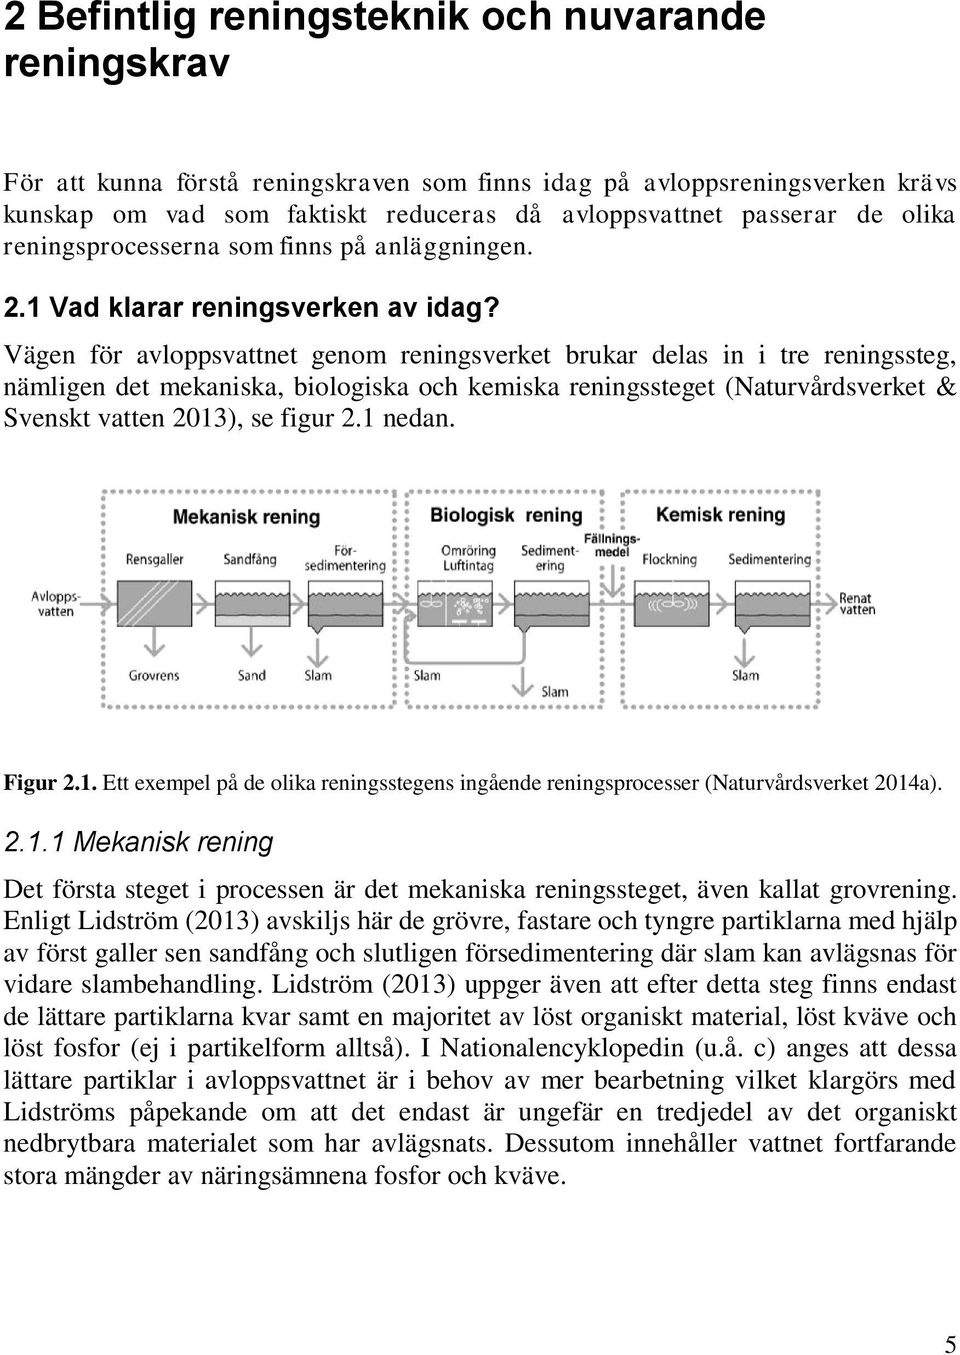 Vägen för avloppsvattnet genom reningsverket brukar delas in i tre reningssteg, nämligen det mekaniska, biologiska och kemiska reningssteget (Naturvårdsverket & Svenskt vatten 2013), se figur 2.